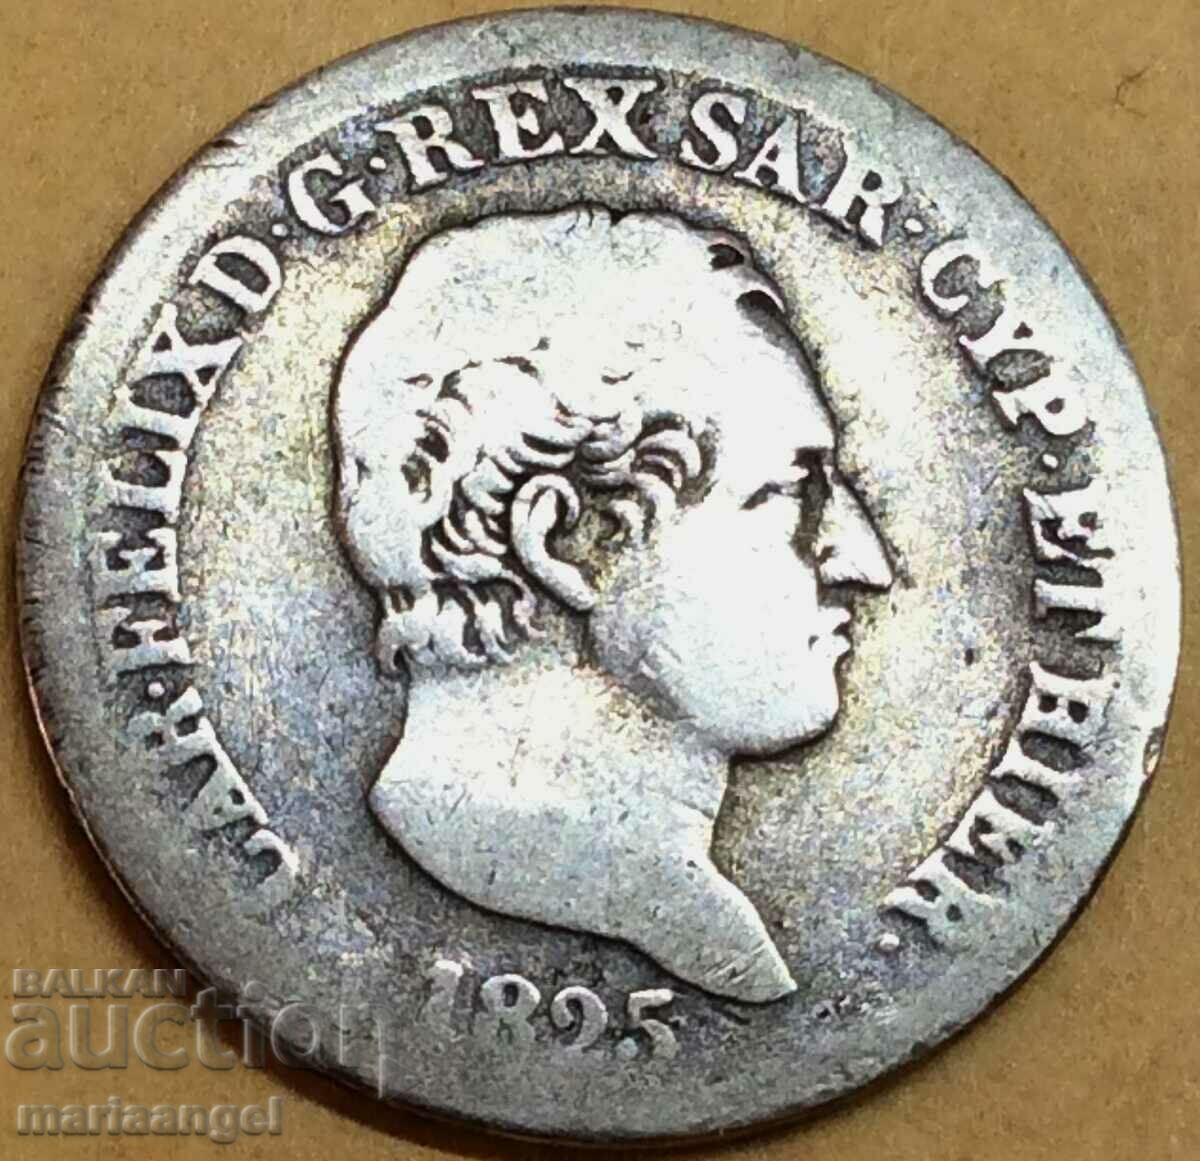 Ιταλία 25 centesimi 1825 Carlo Felice ασήμι - πολύ σπάνιο